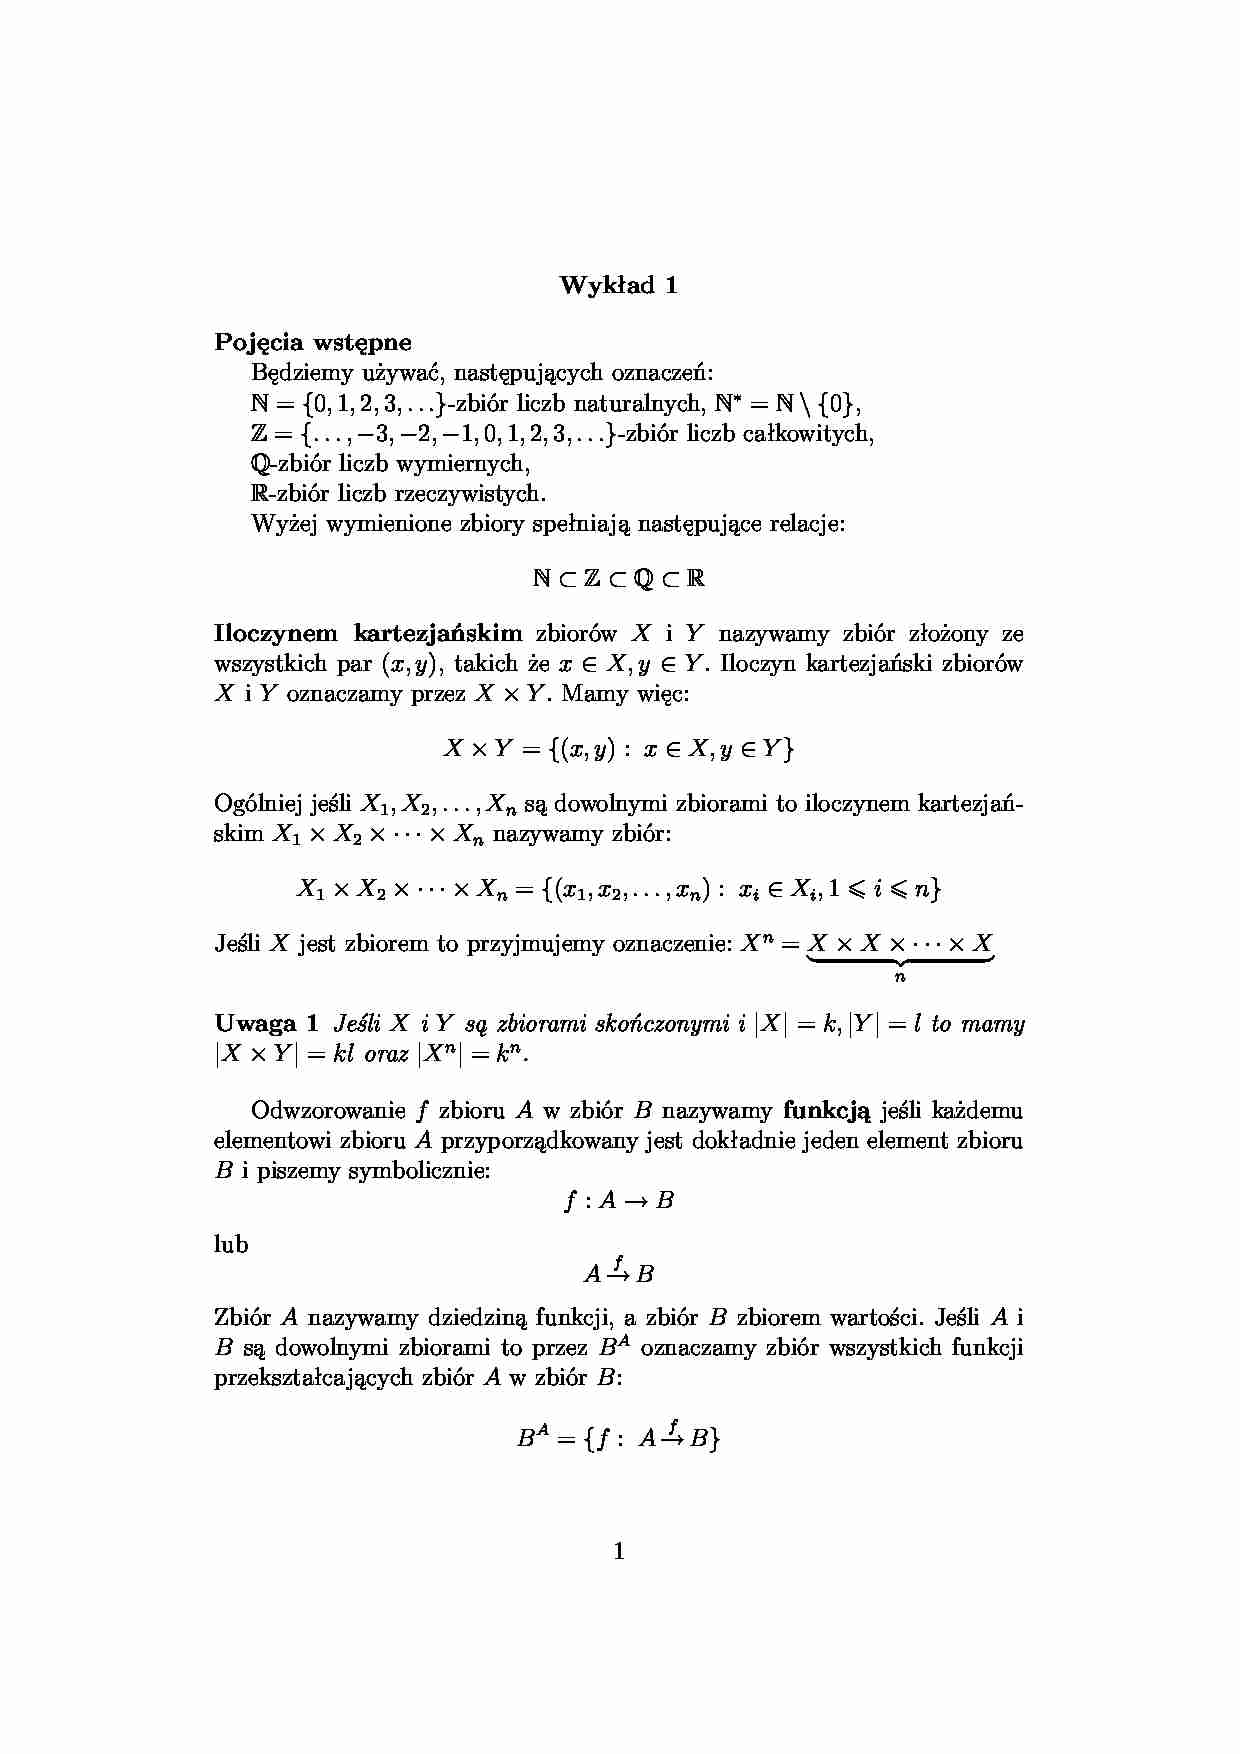 Pojęcia wstępne - algebra - strona 1